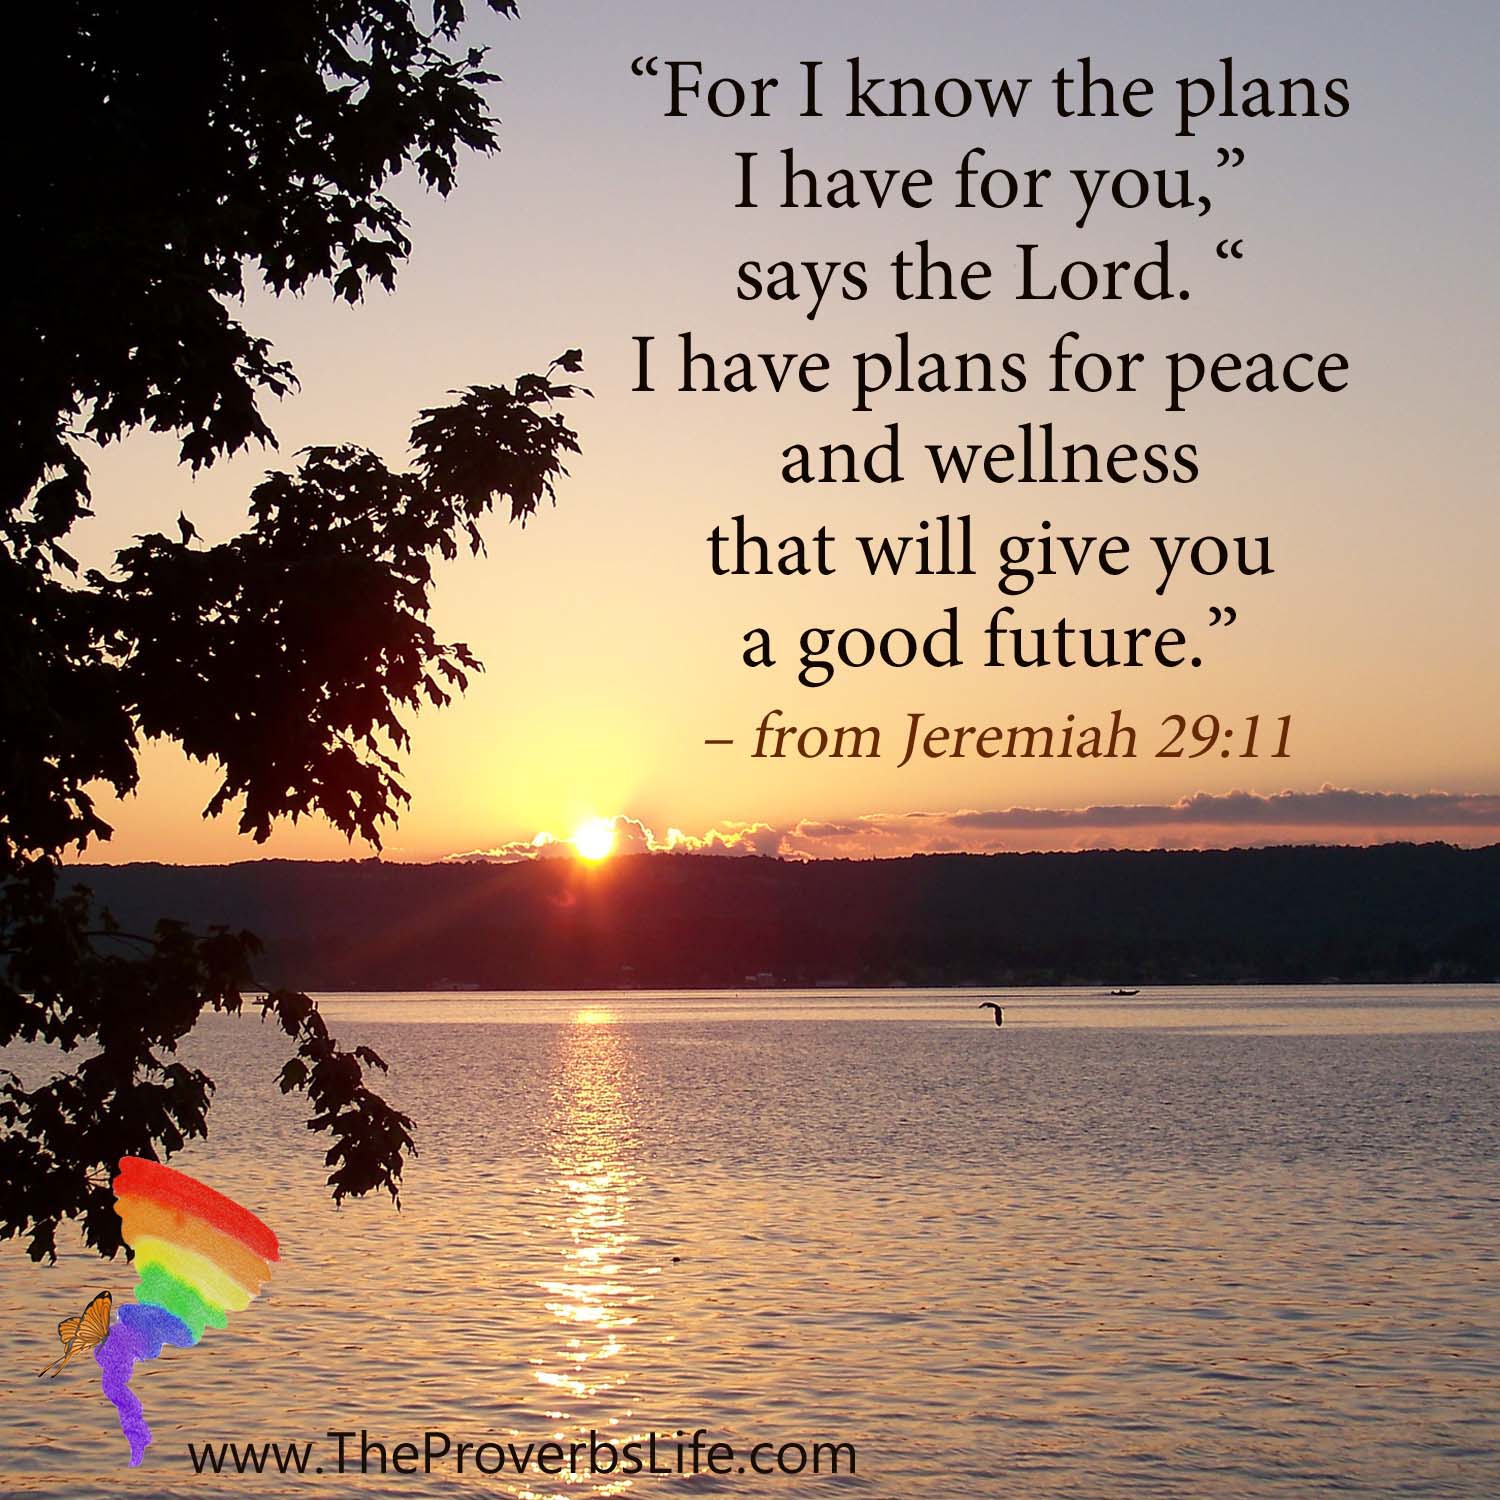 Scripture Focus - Jeremiah 29:11